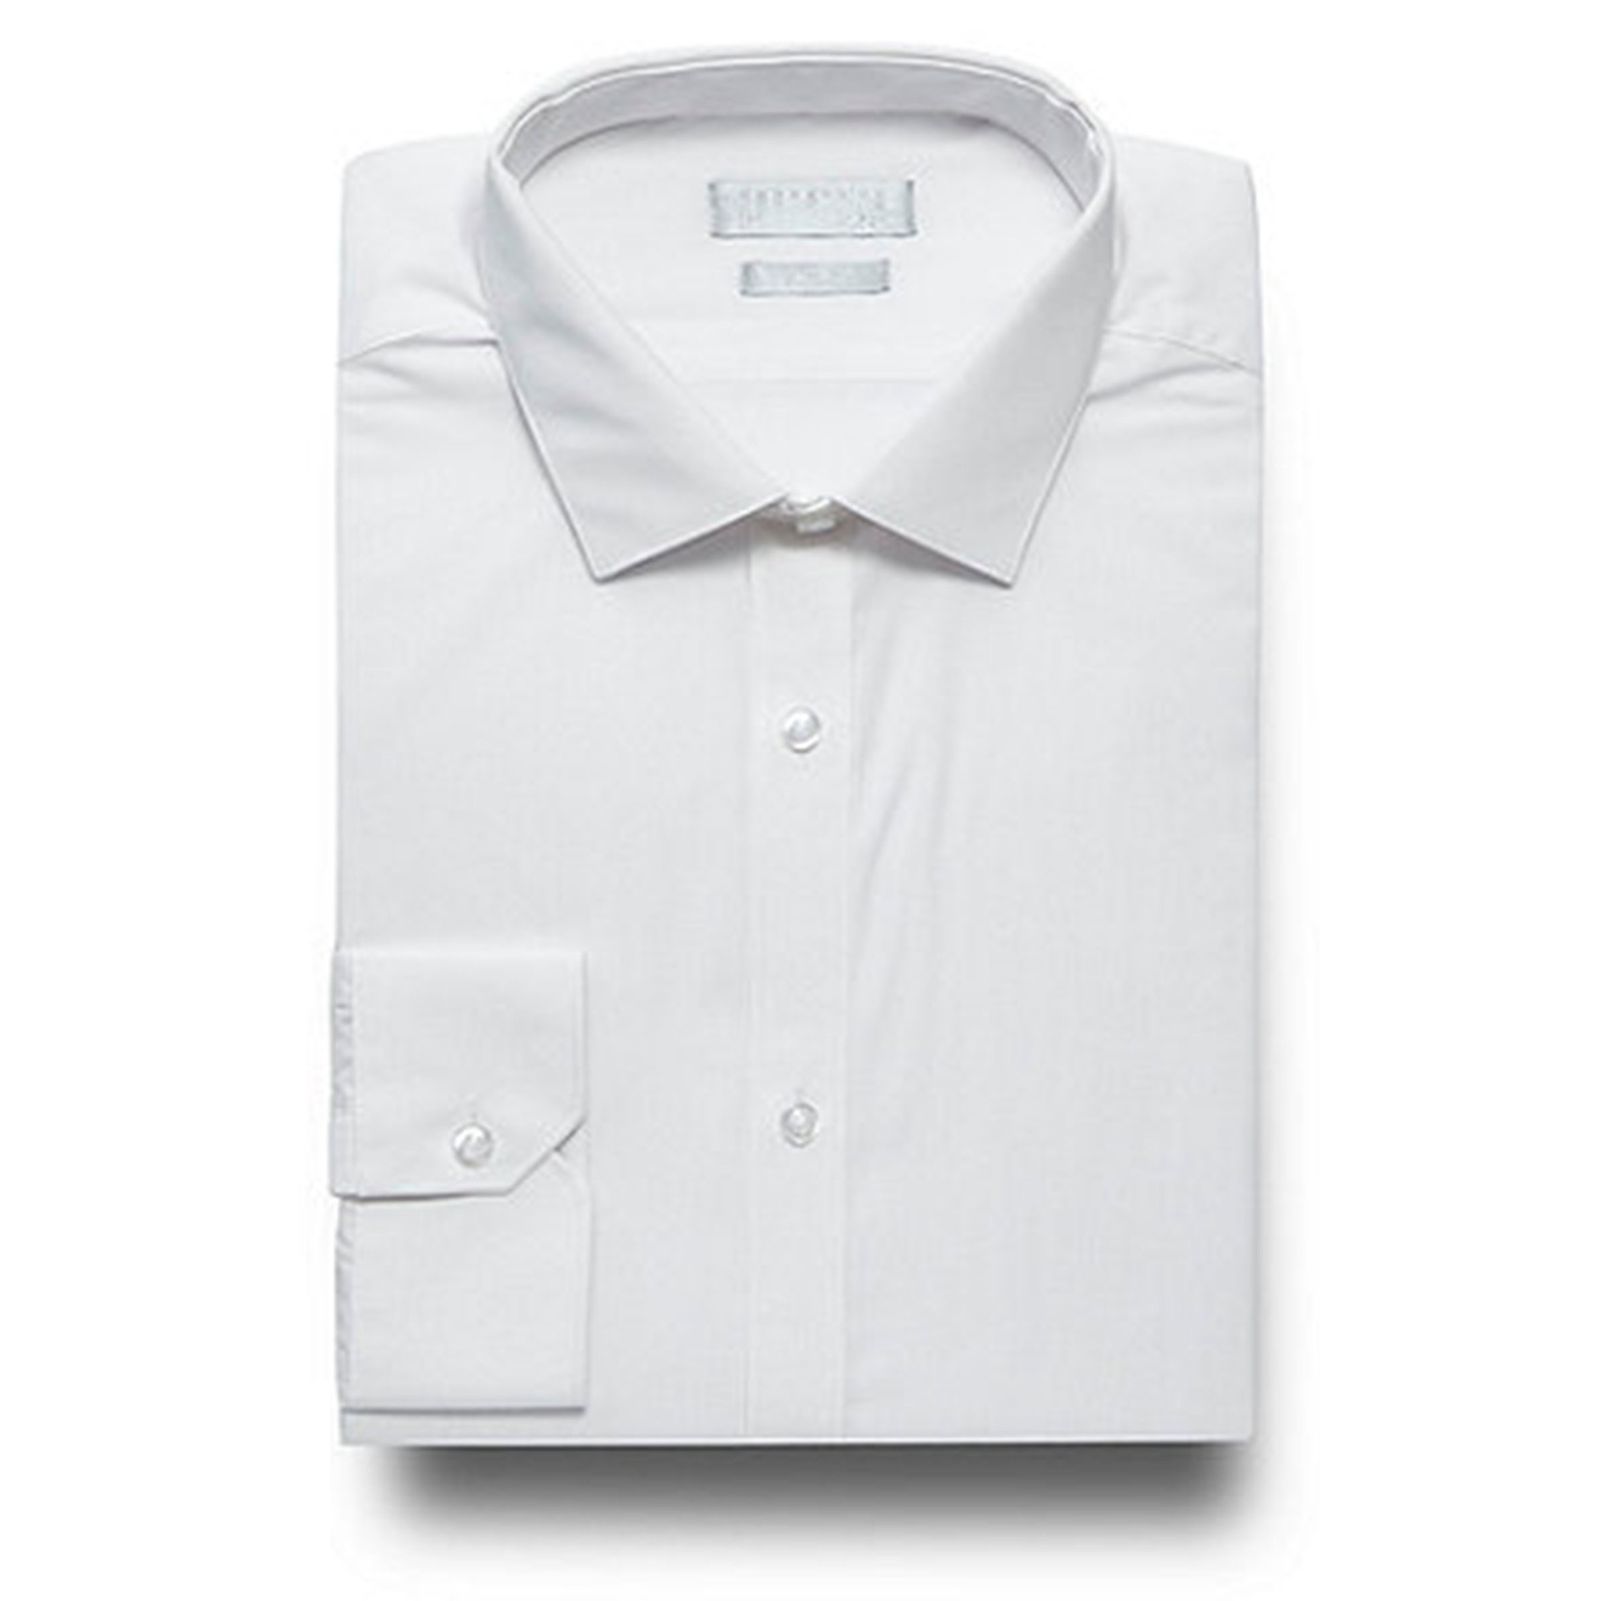 پیراهن رسمی مردانه - رد هرینگ - سفيد - 1